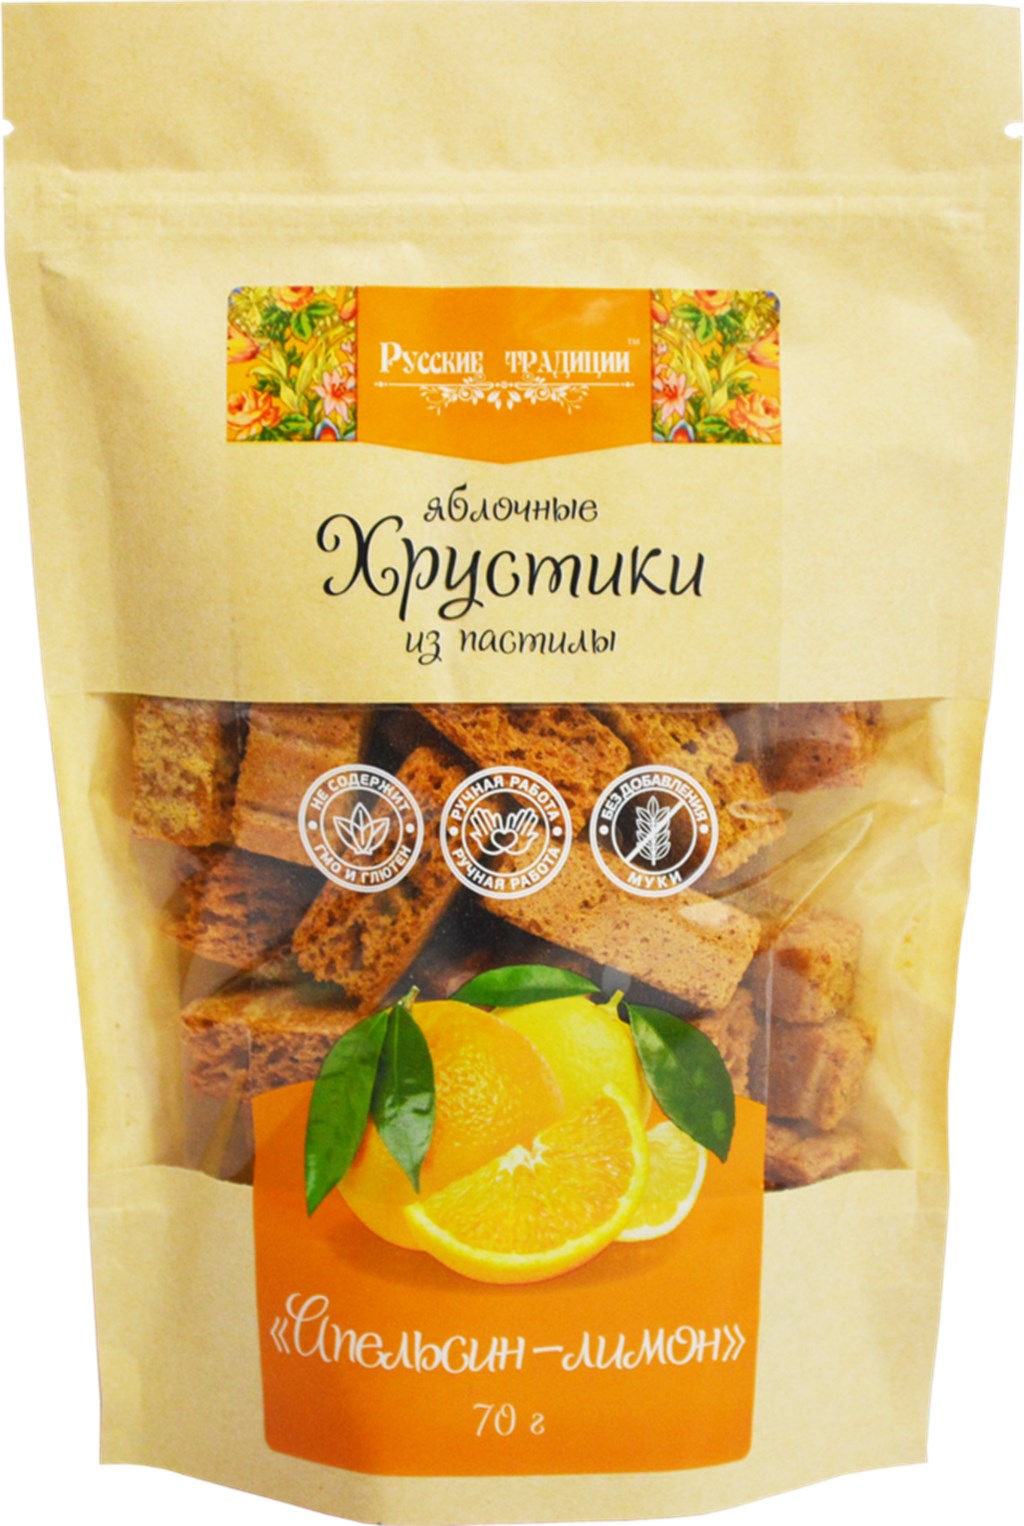 Пастила Русские Традиции Хрустики апельсин-лимон 70 г